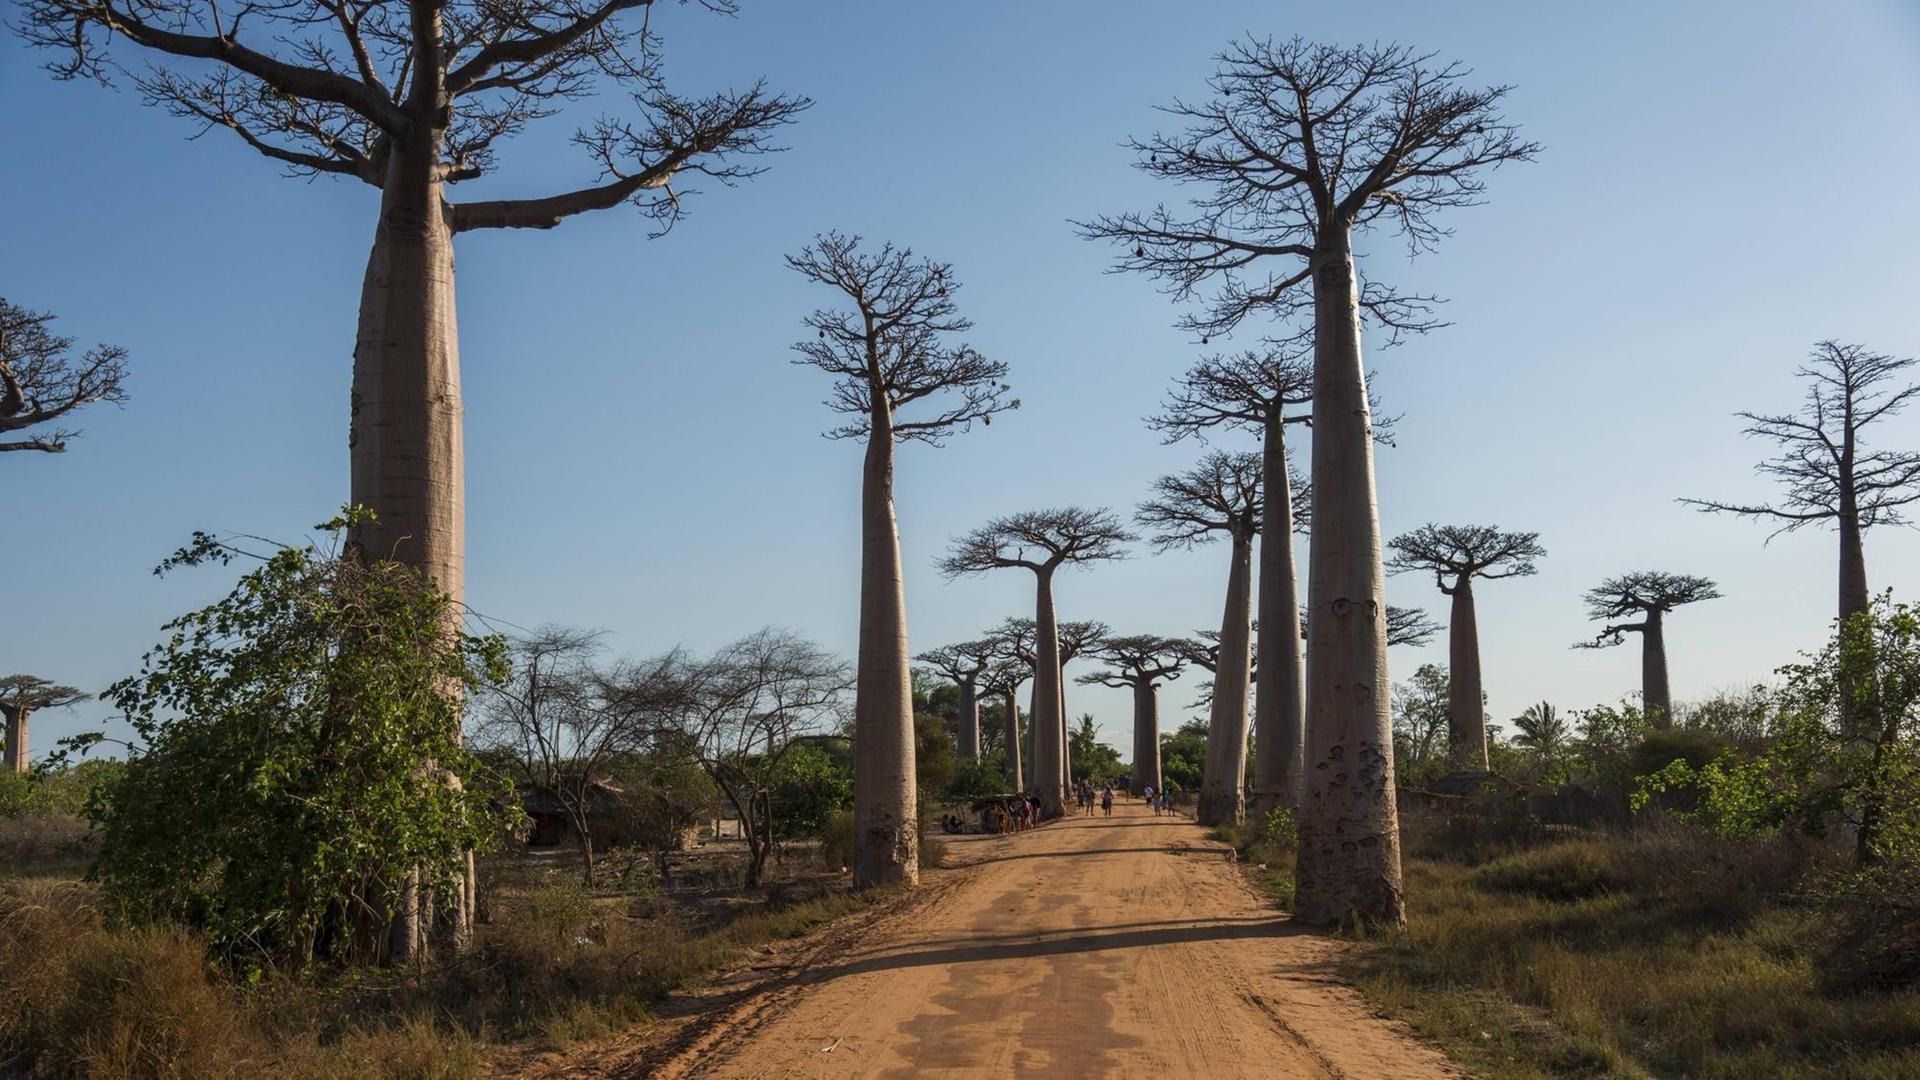 Affenbrotbäume in Madagaskar